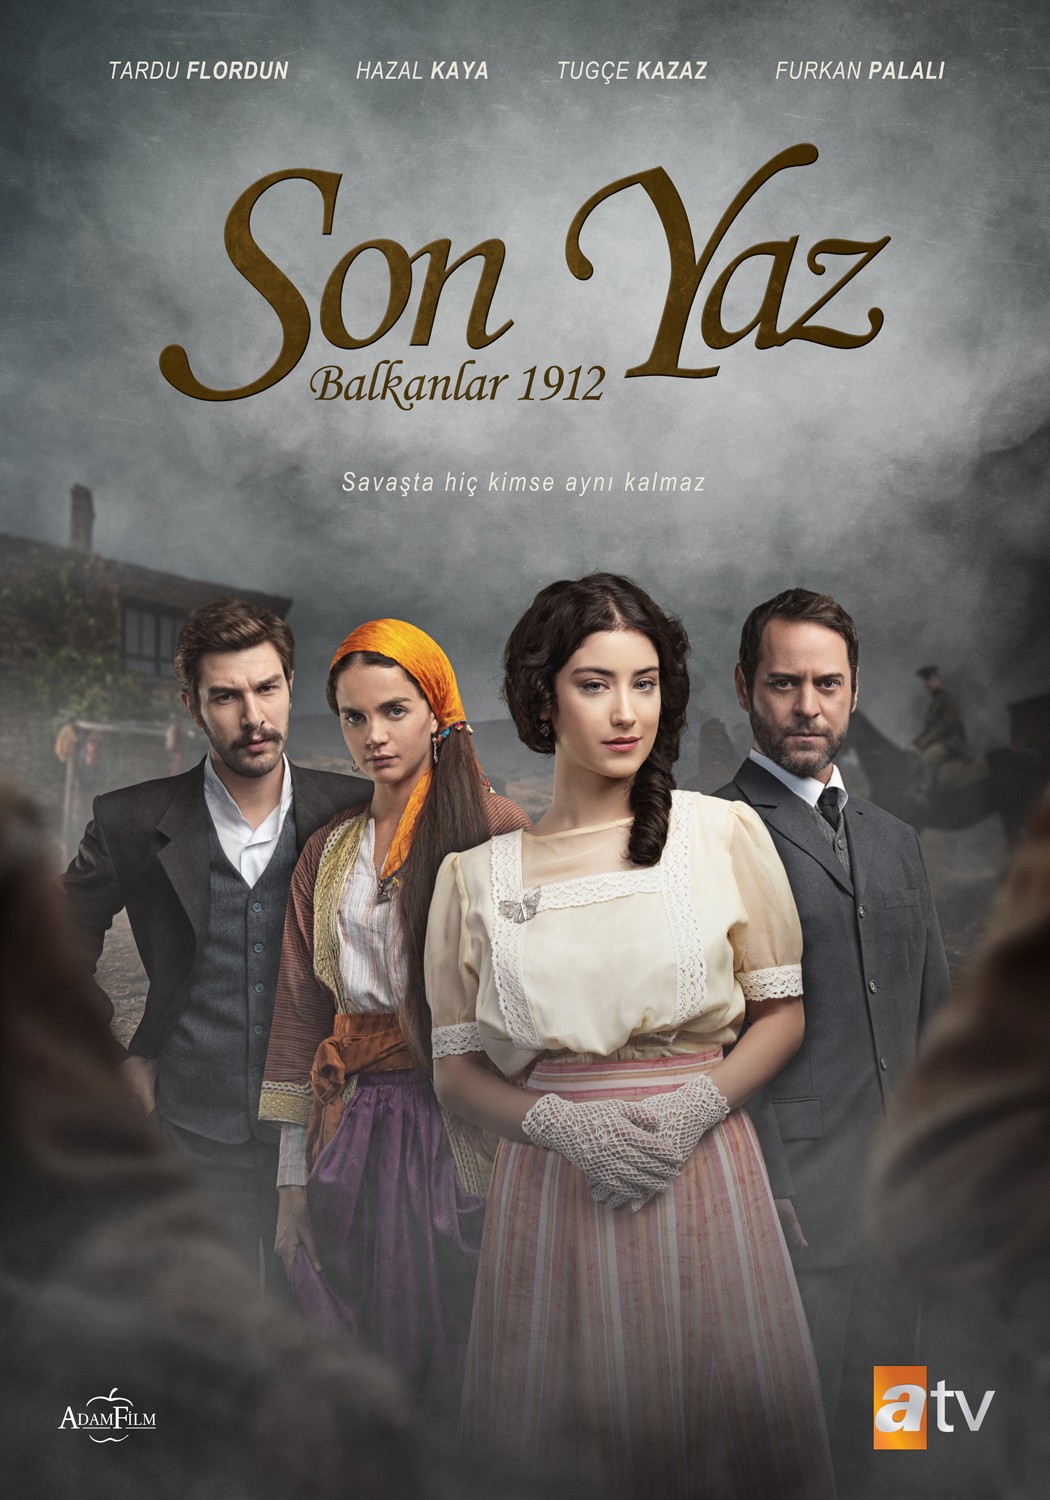 Son Yaz - Balkanlar 1912 movie